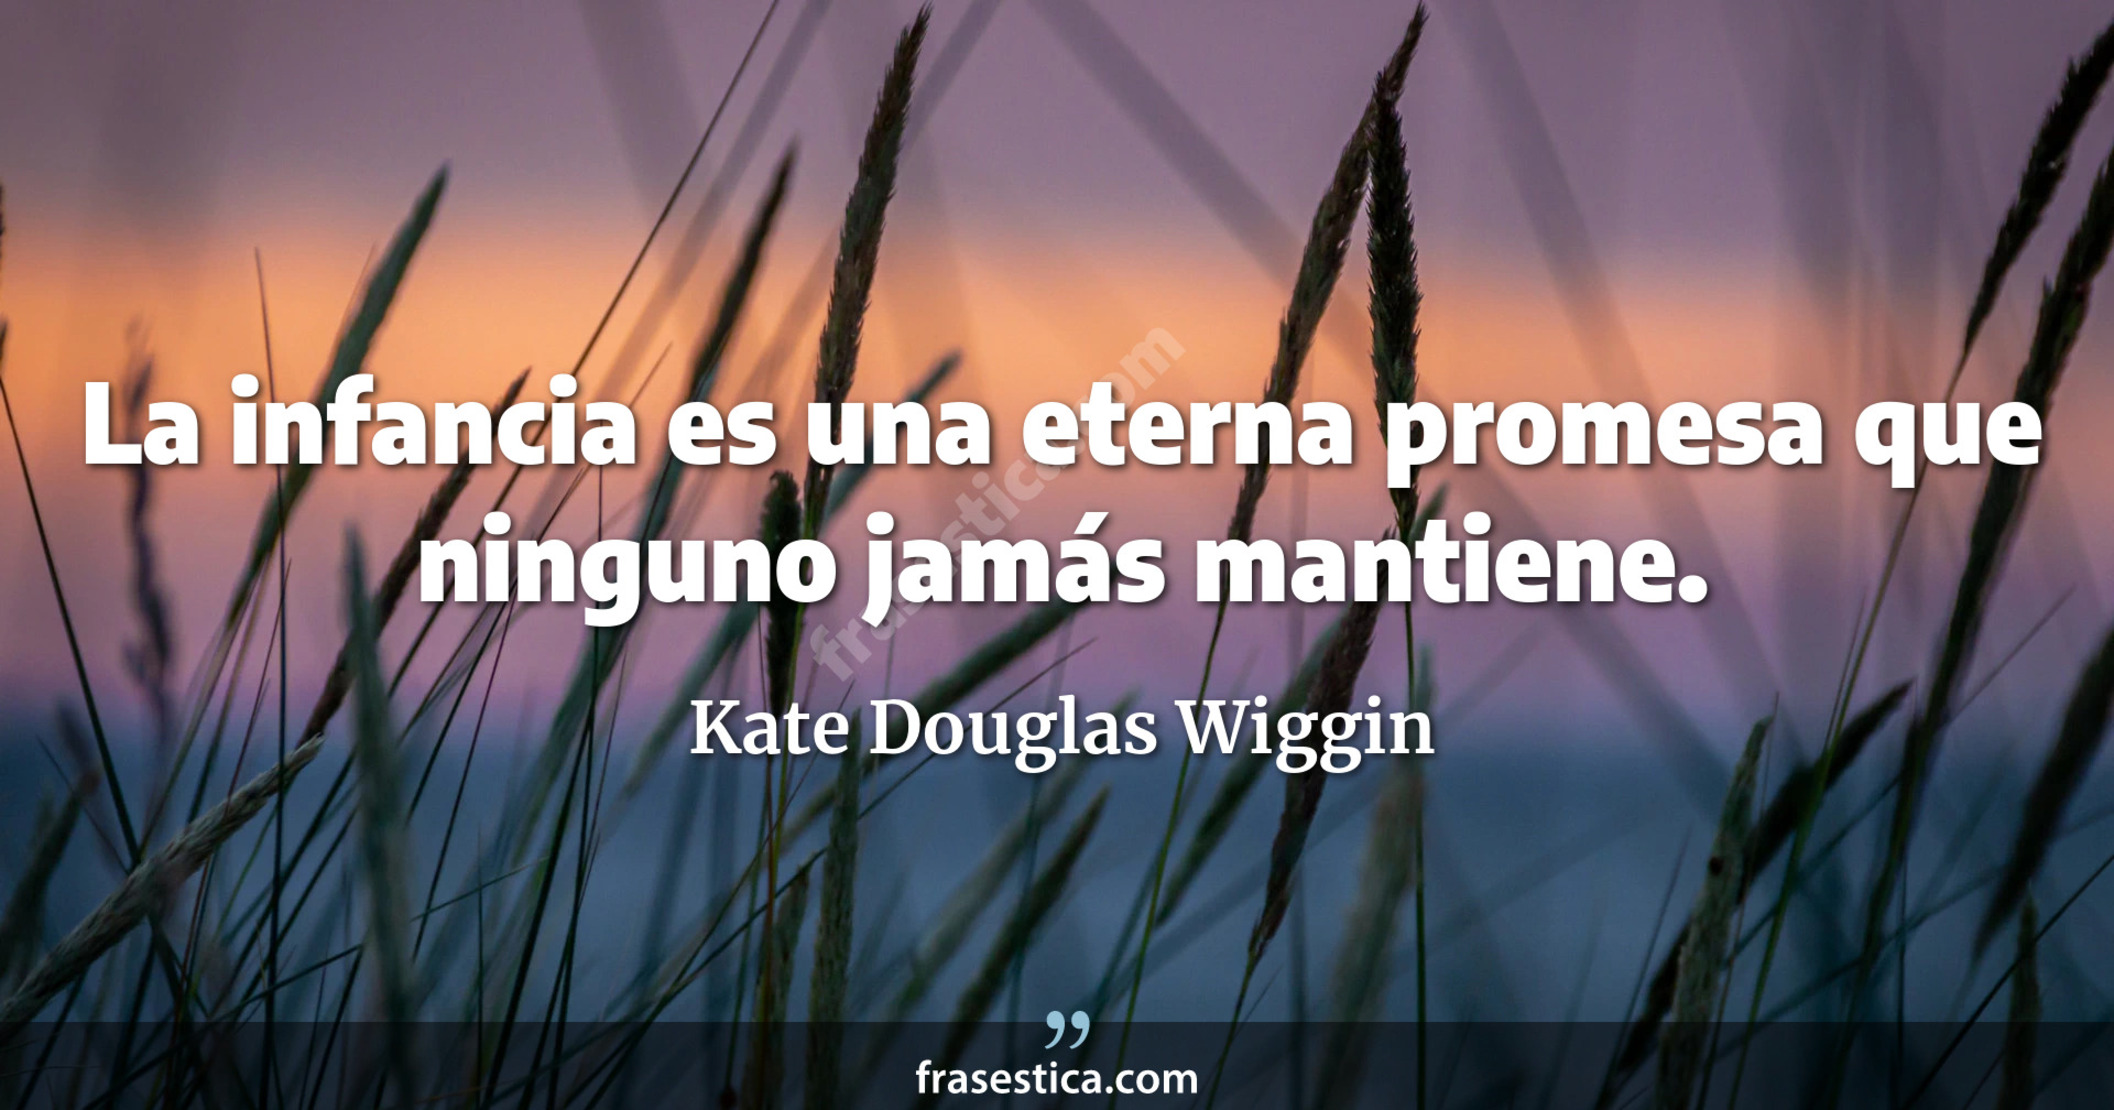 La infancia es una eterna promesa que ninguno jamás mantiene. - Kate Douglas Wiggin